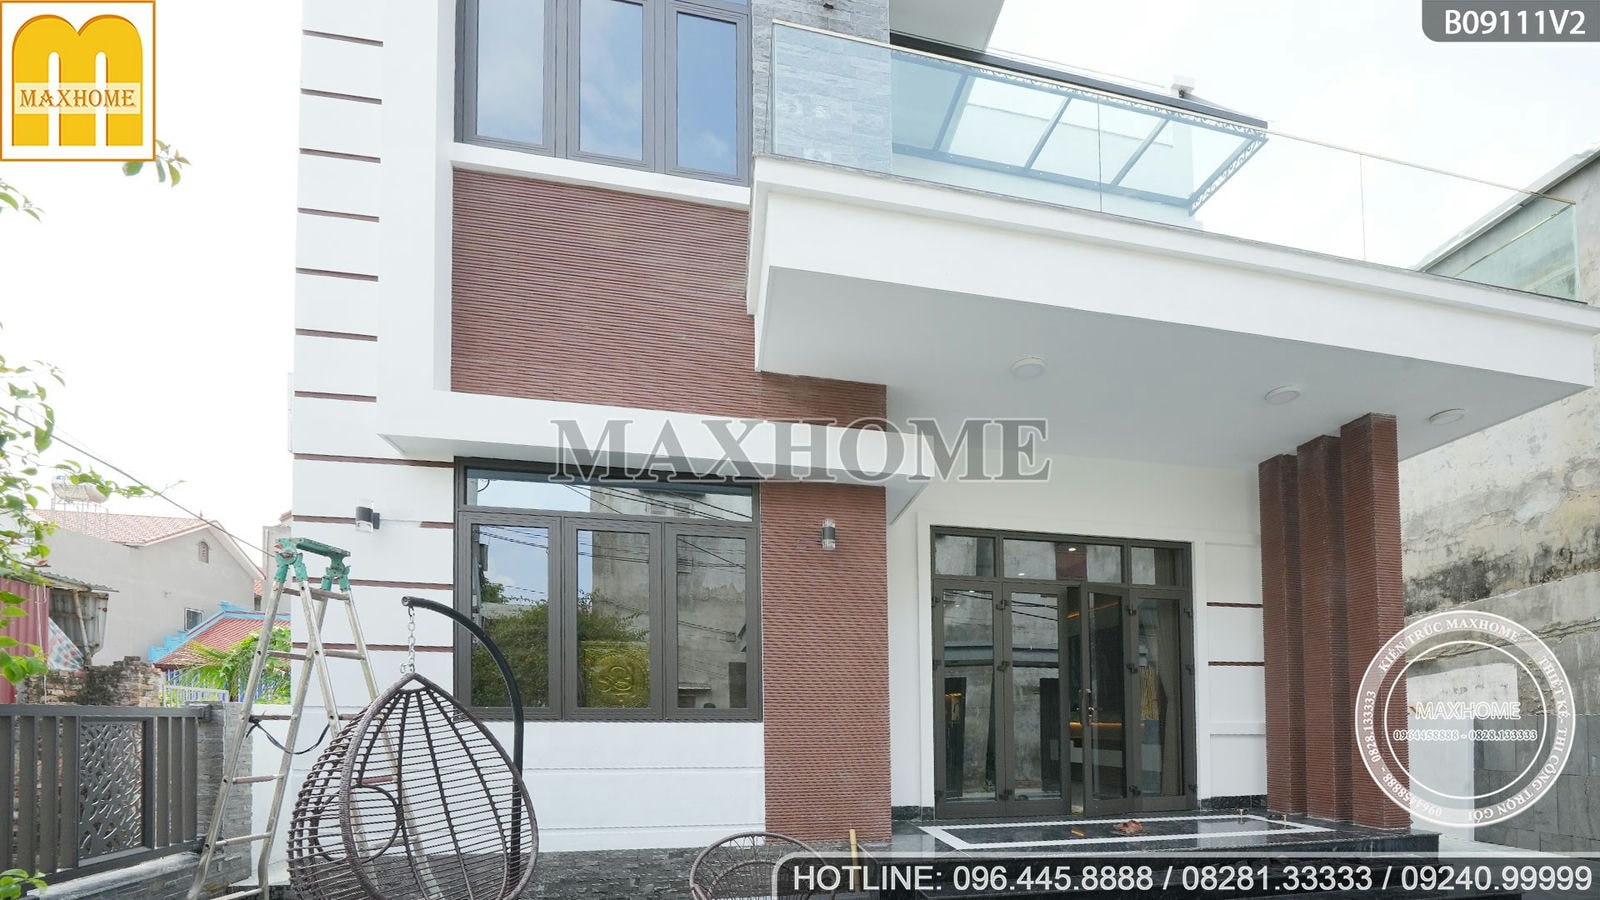 Maxhome thi công trọn gói nhà hiện đại mái bằng siêu đẹp, rẻ | MH01430